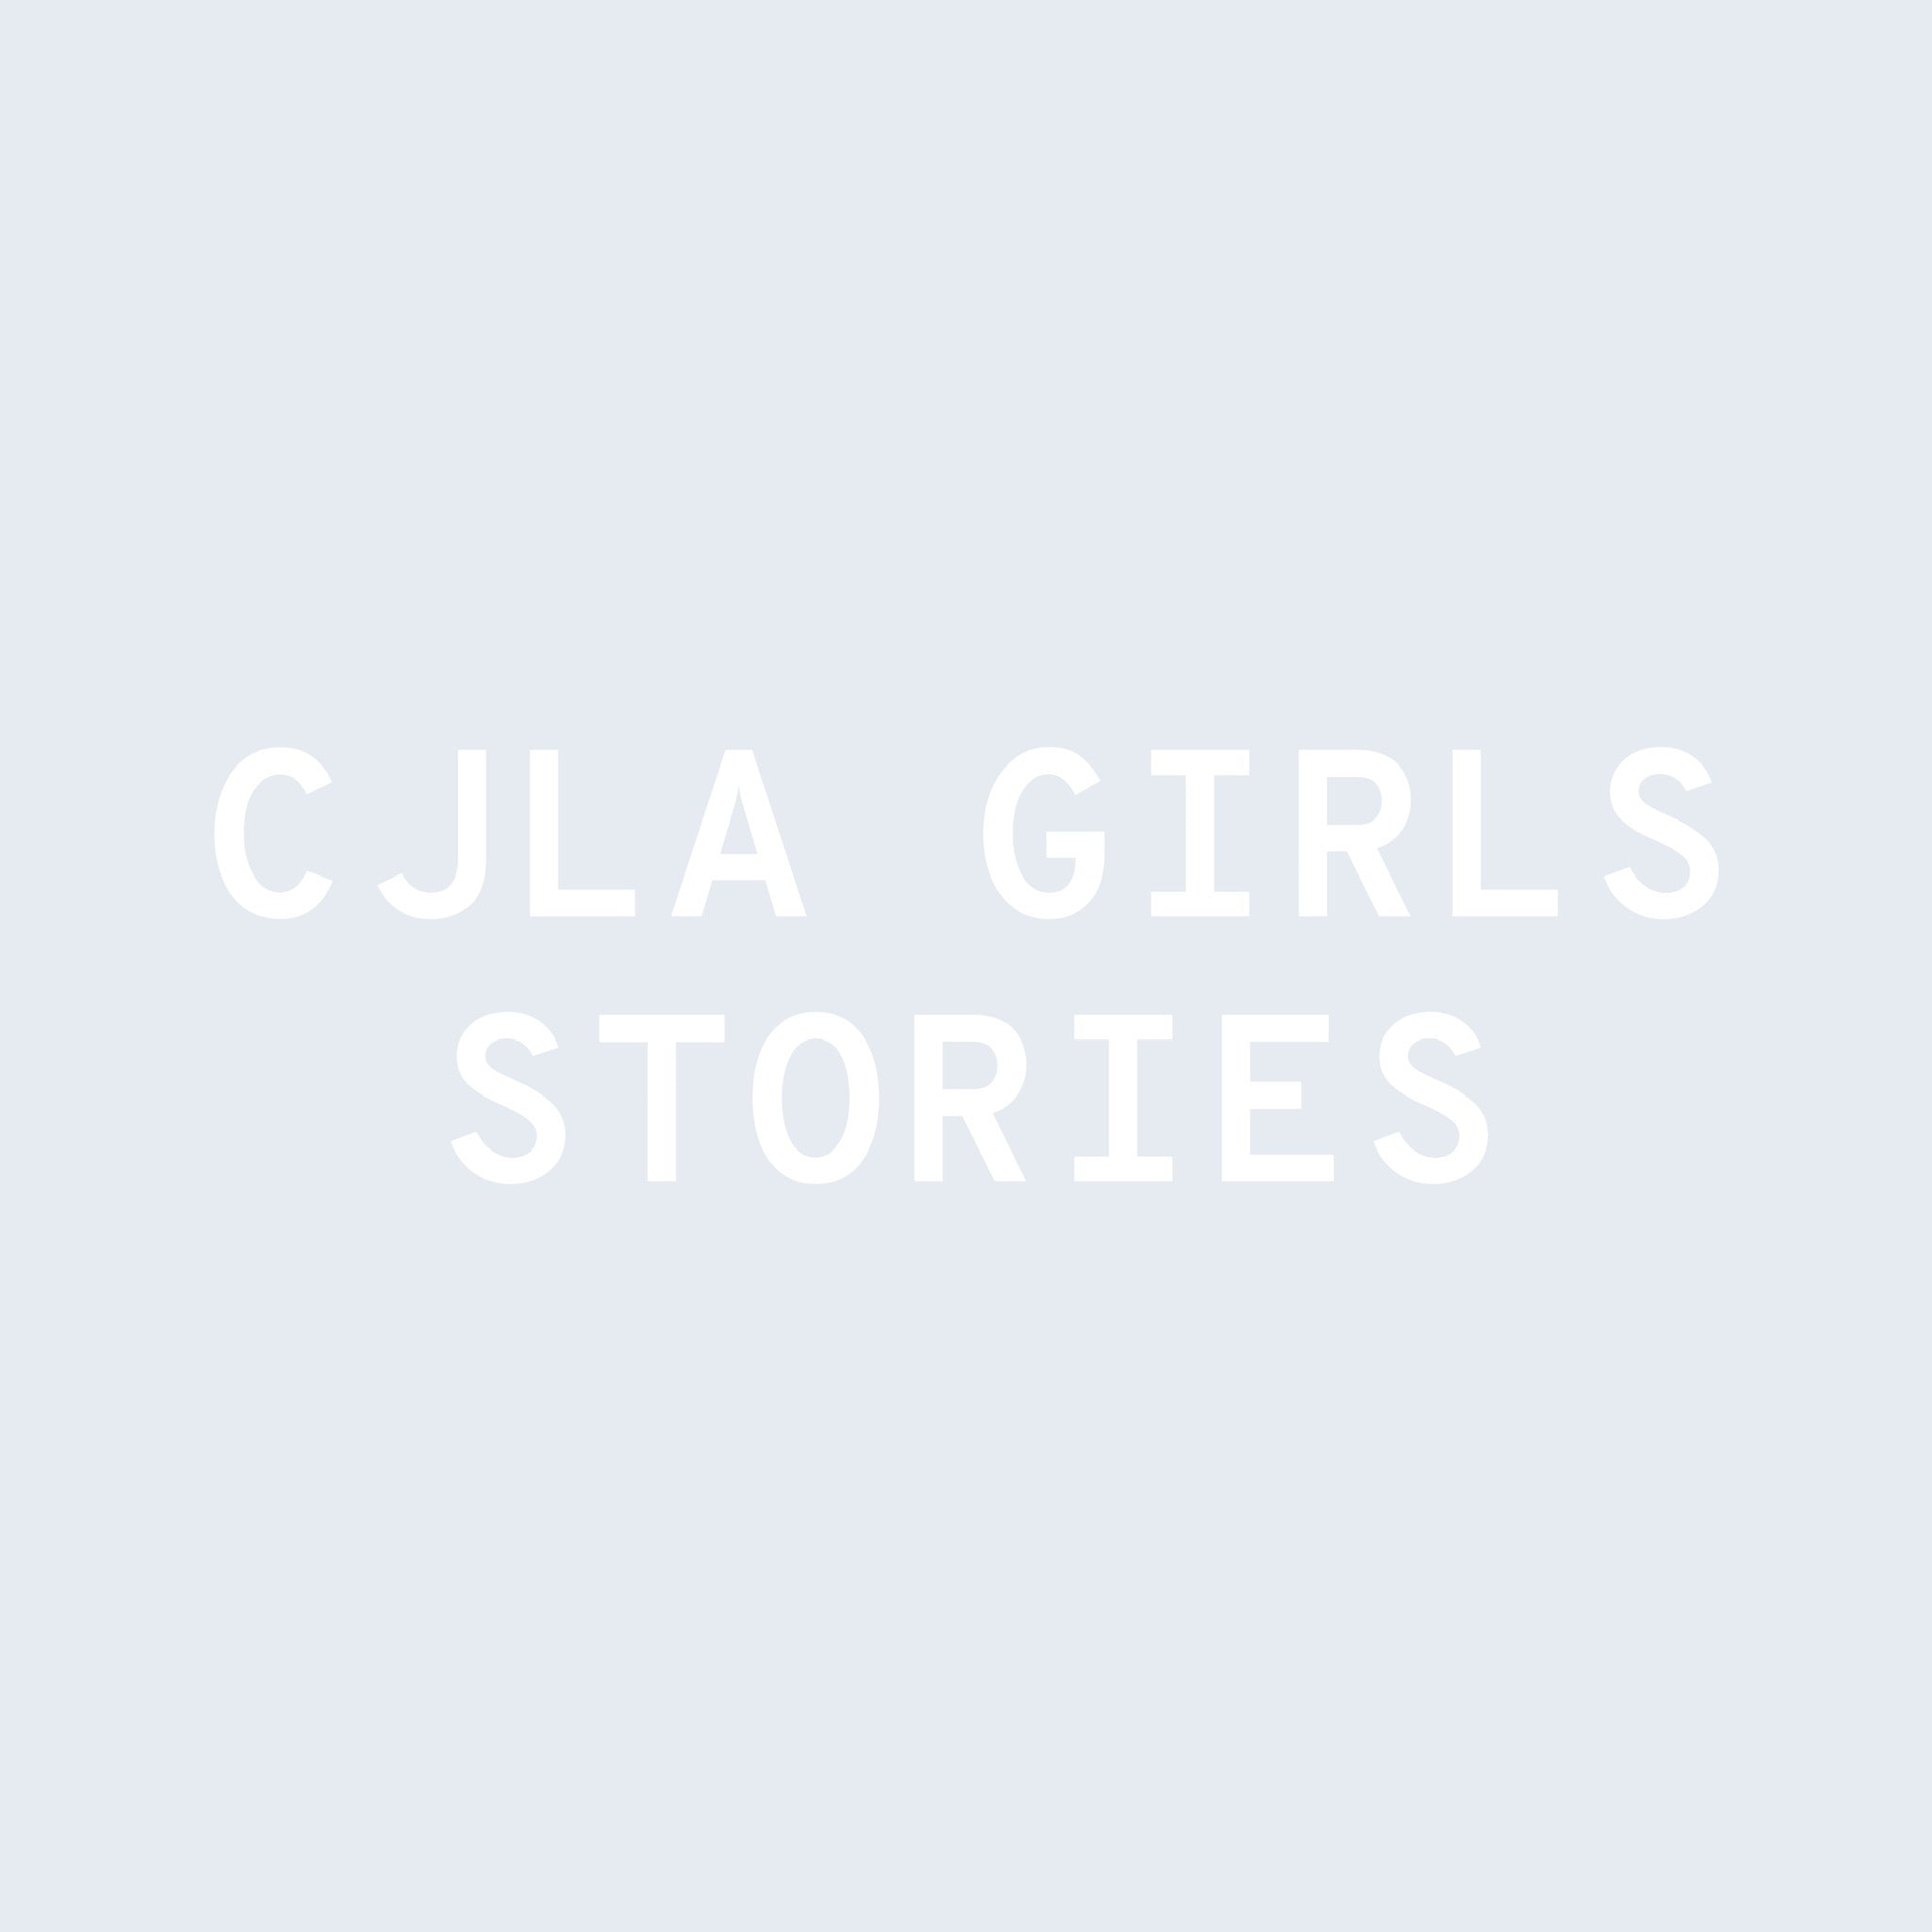 CJLA Girls Stories: Brittney Gage